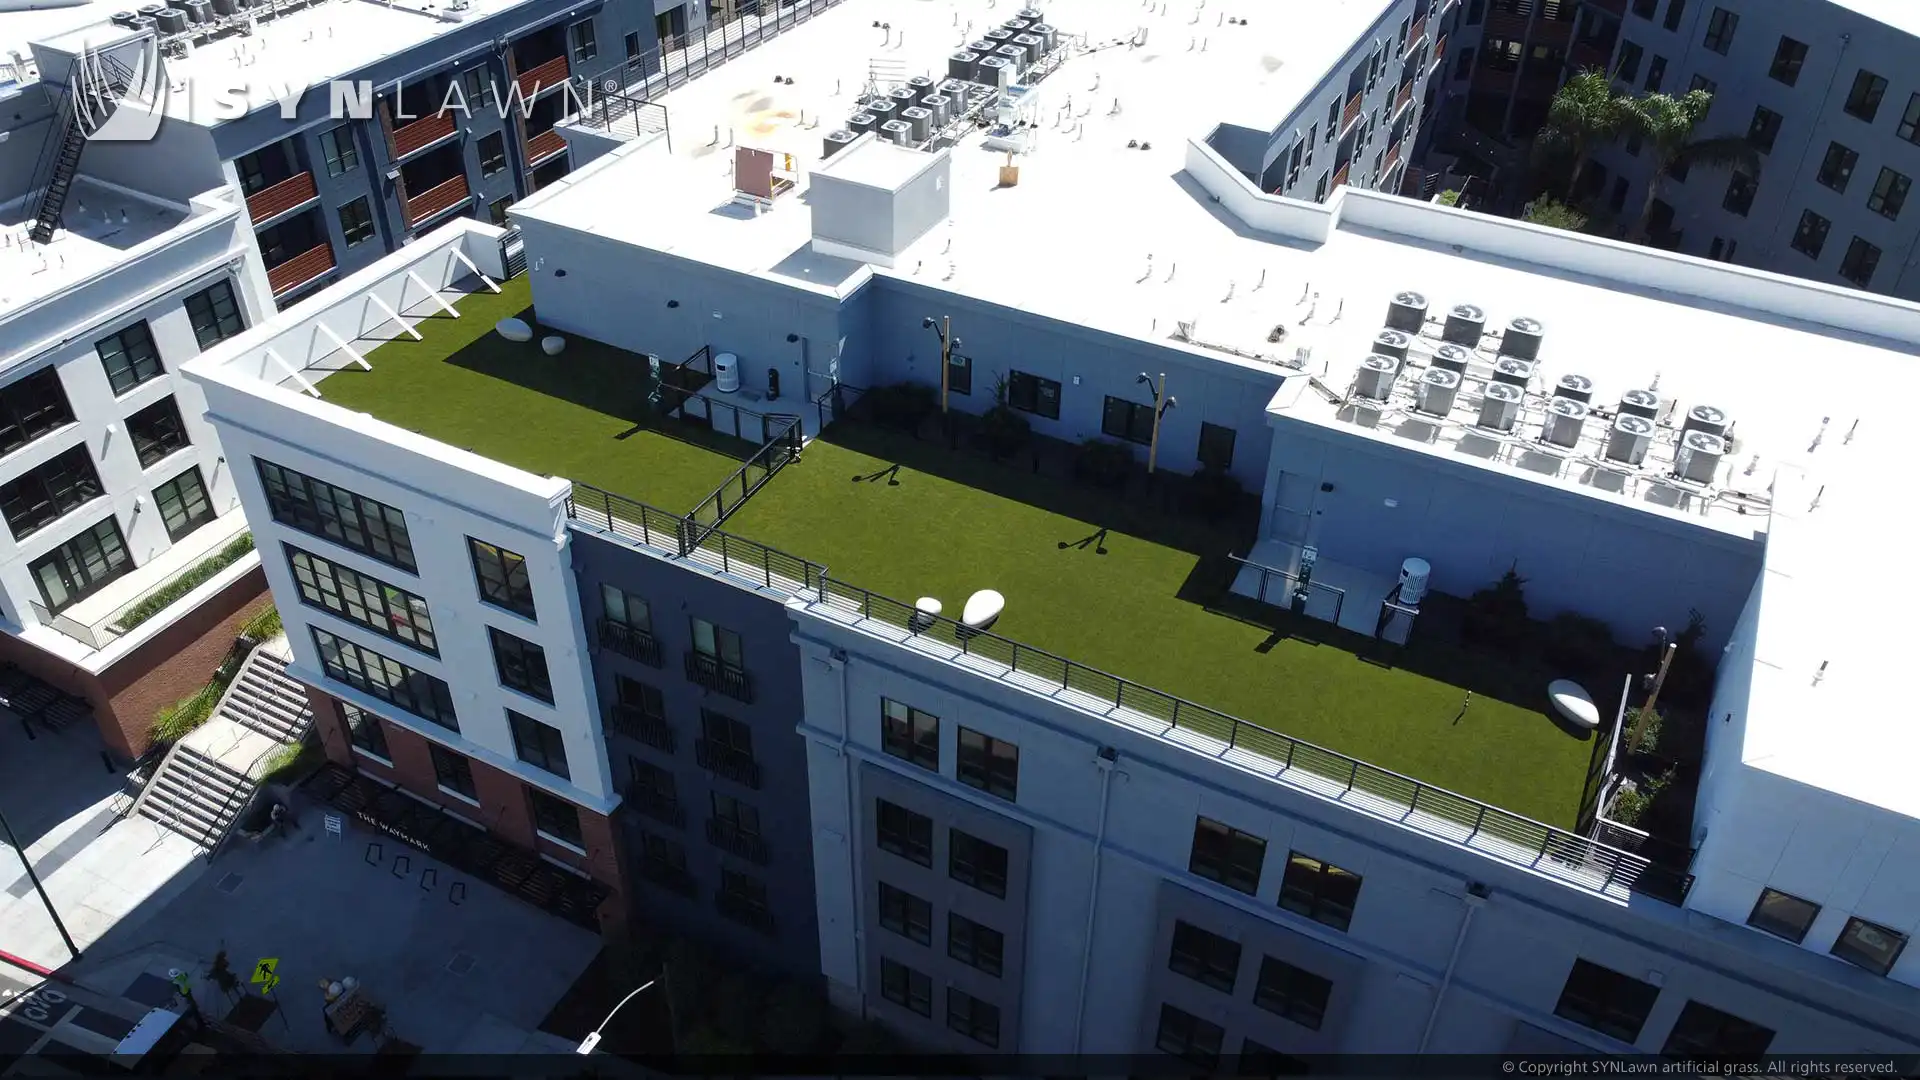 The Waymark 打造屋顶绿洲，为居民提供高档便利设施